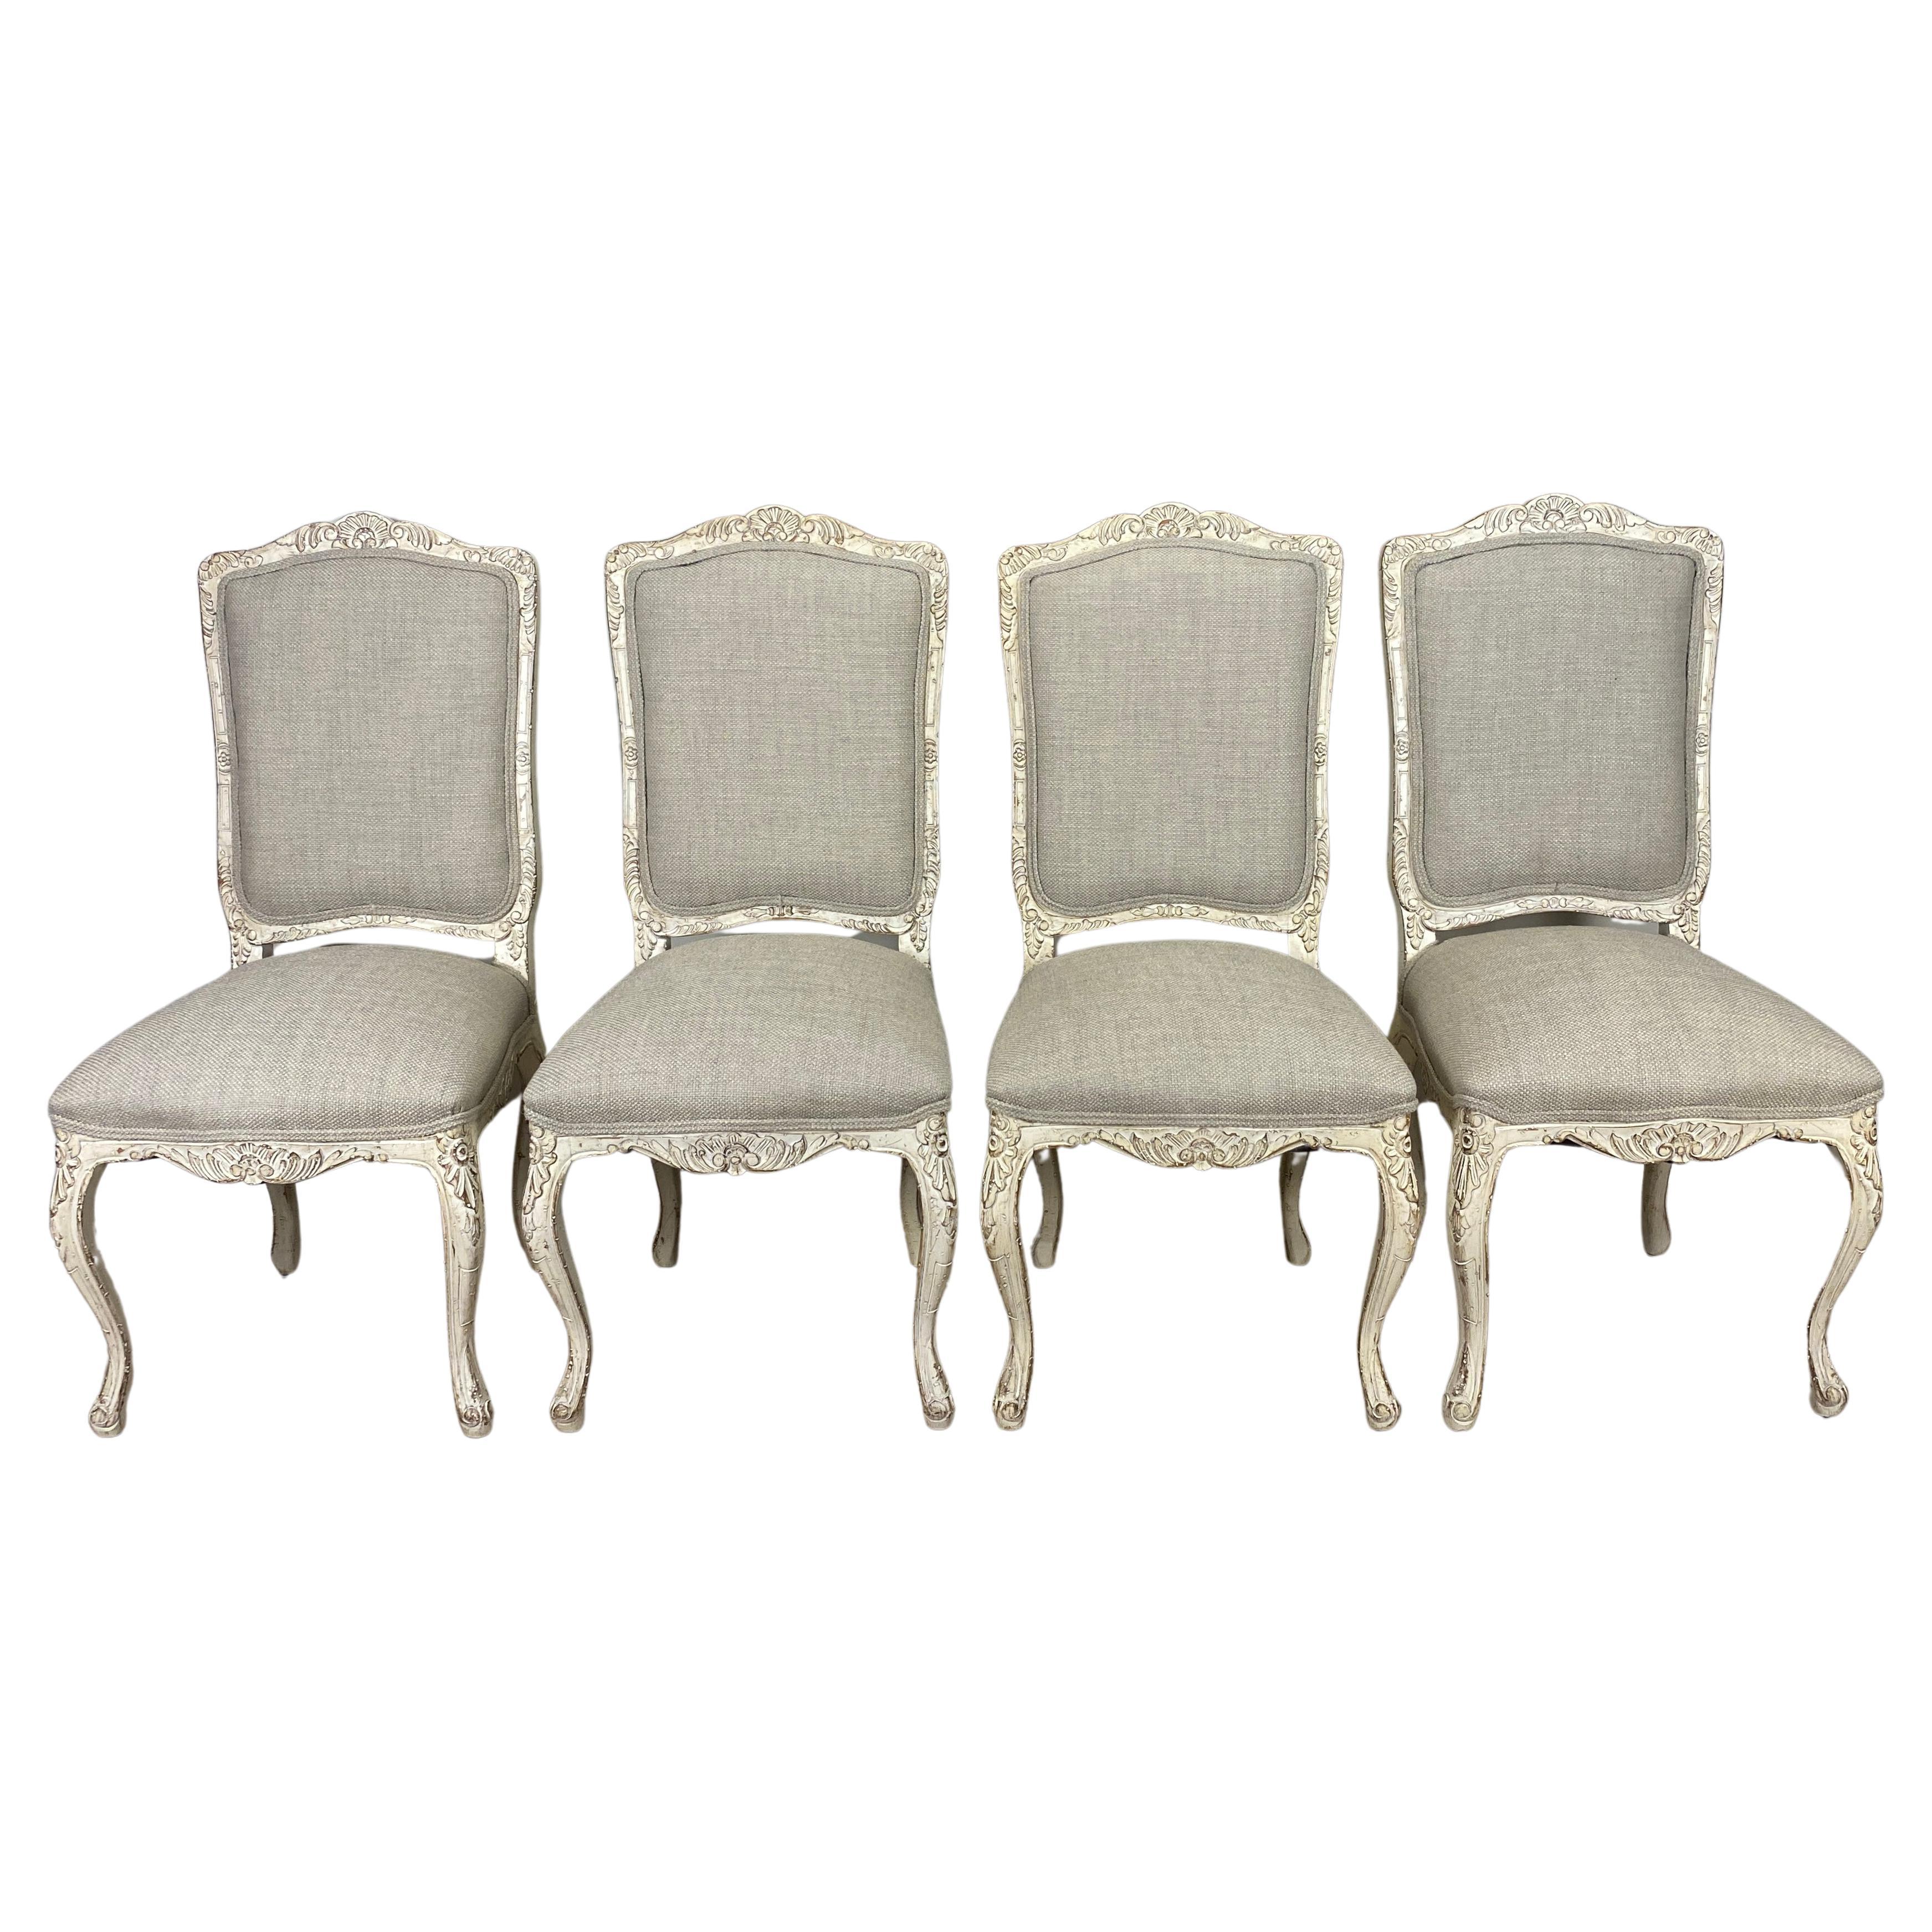 Ensemble de 4 chaises de salle à manger françaises de style Louis XV, peintes et récemment retapissées